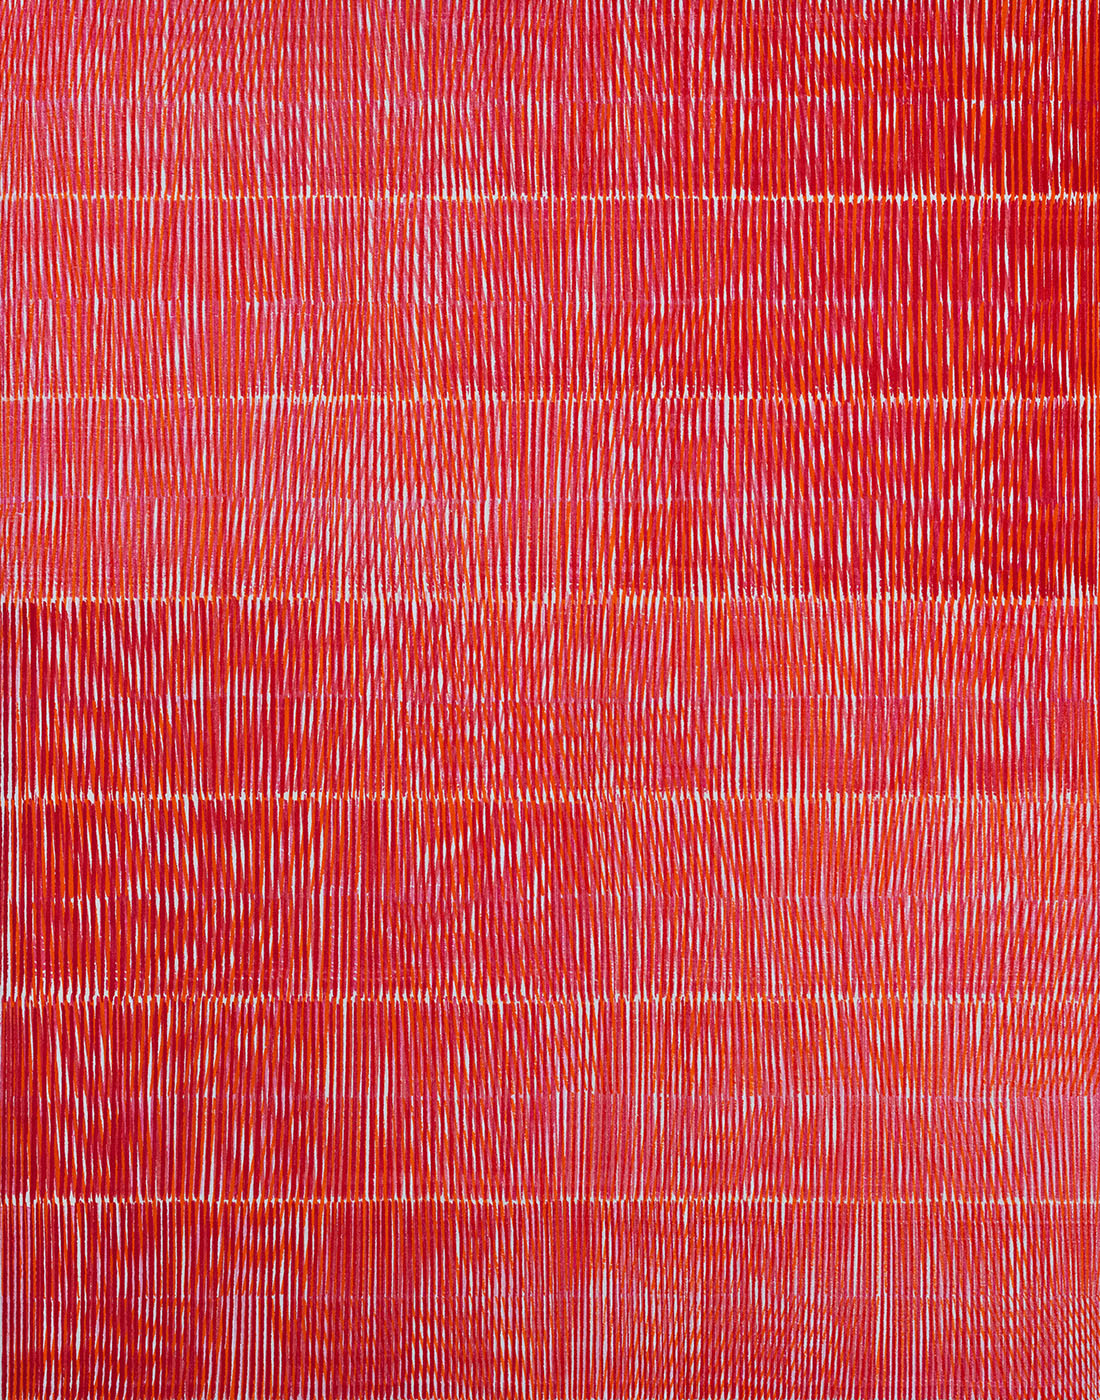 Nikola Dimitrov, KlangRaumRot V, 2020, Pigmente, Bindemittel auf Leinwand, 140 x 110 cm